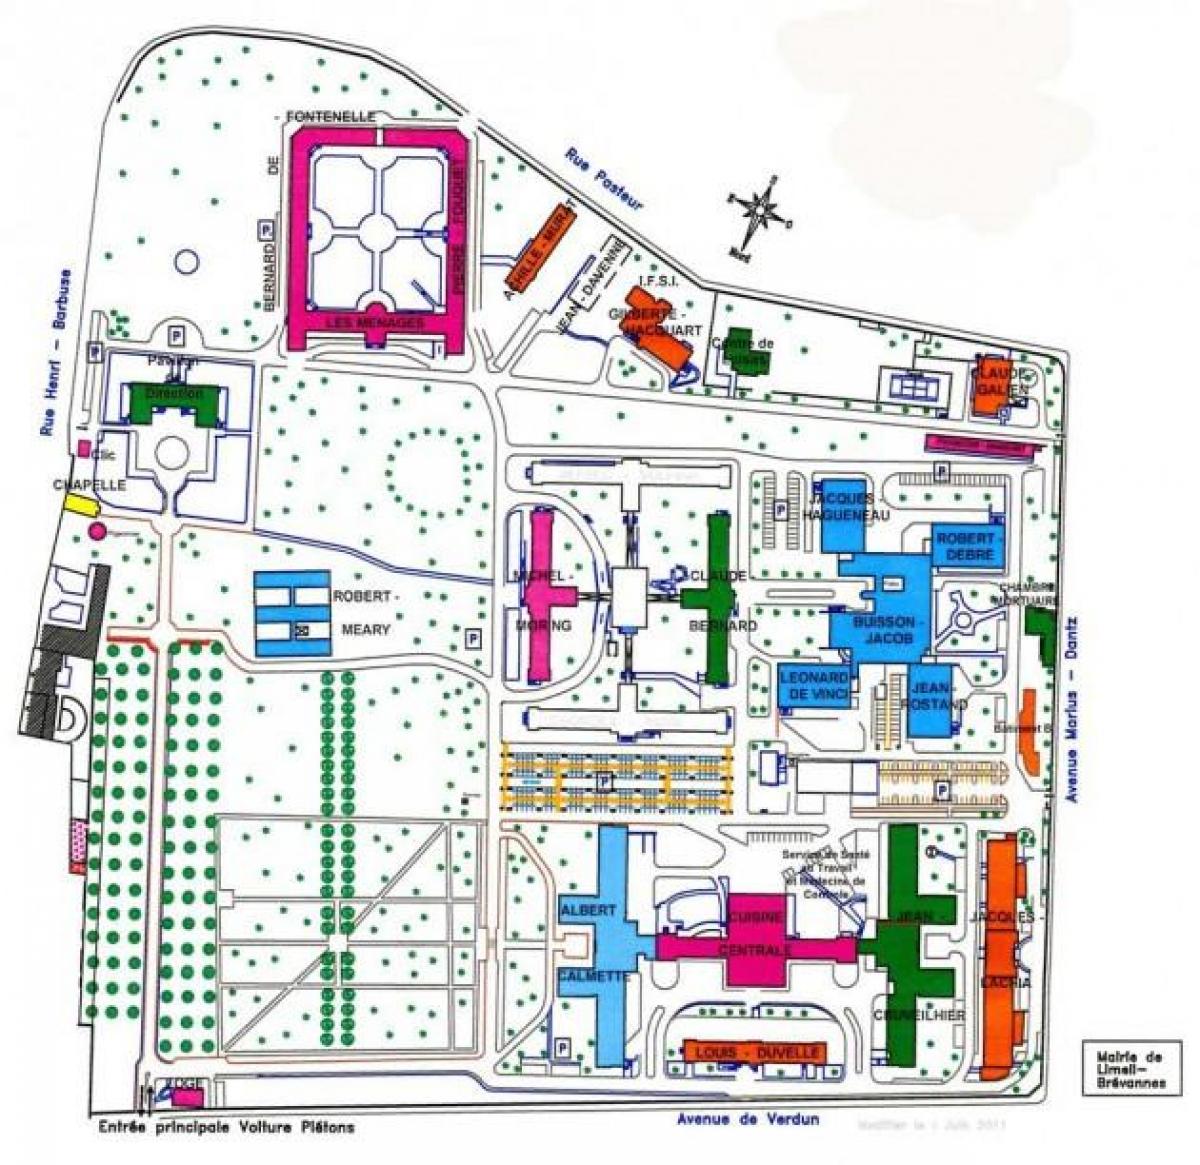 Mapa ng Emile-Roux ospital